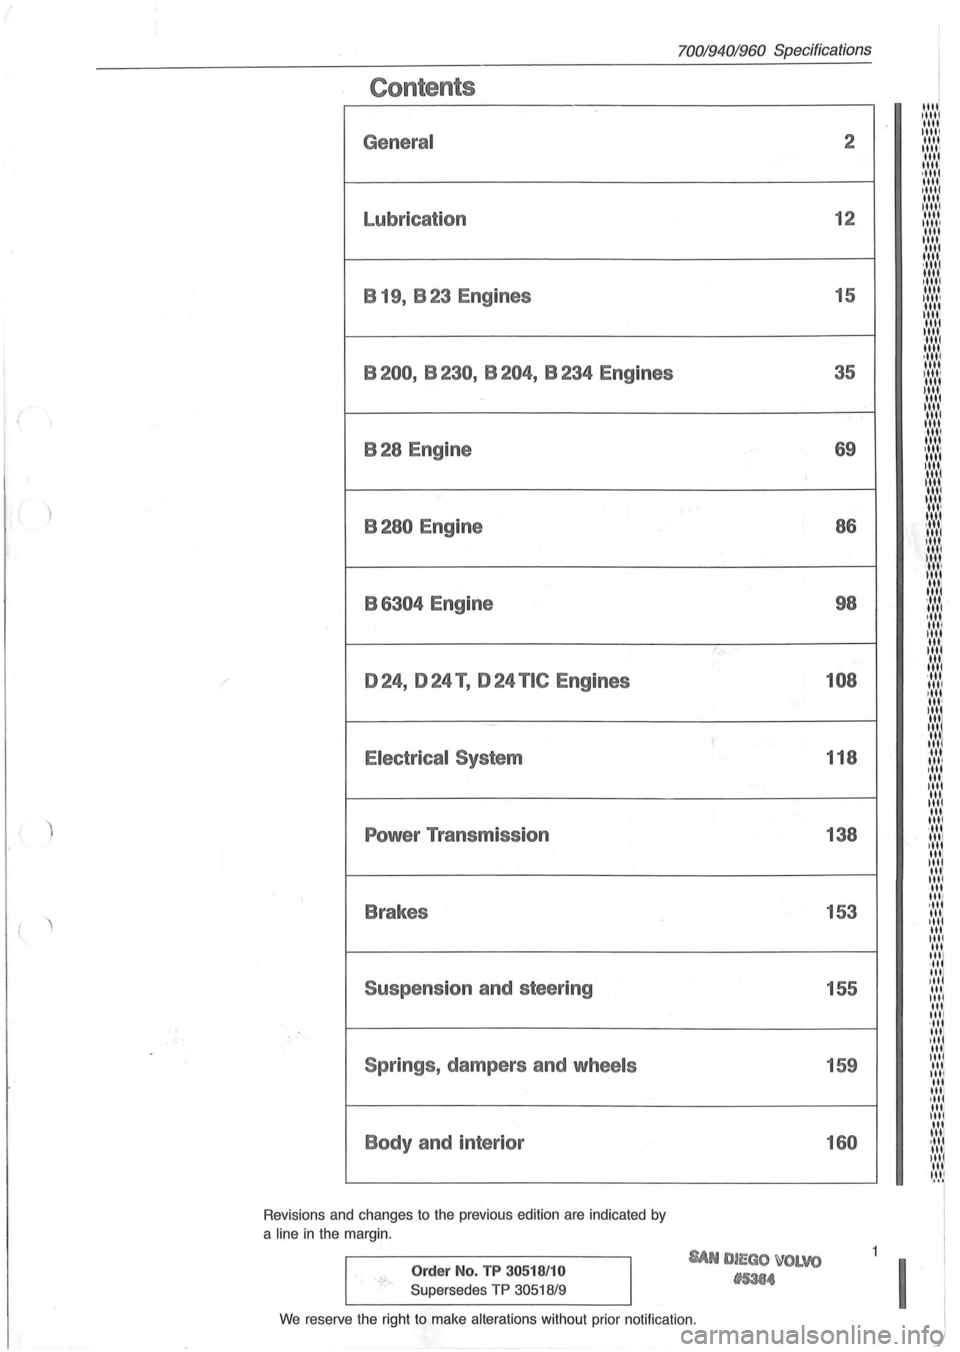 VOLVO 960 1982  Service Repair Manual ( 
) 
Contents 
General 
Lubrication B  19,  B 23  Engines 
B200,  B230, B204, B234 Engines 
B28 Engine 
B280 Engine 
B 
6304 Engine 
024, 024 T , 024 TIC Engines 
Electrical  System 
Power Transmissi